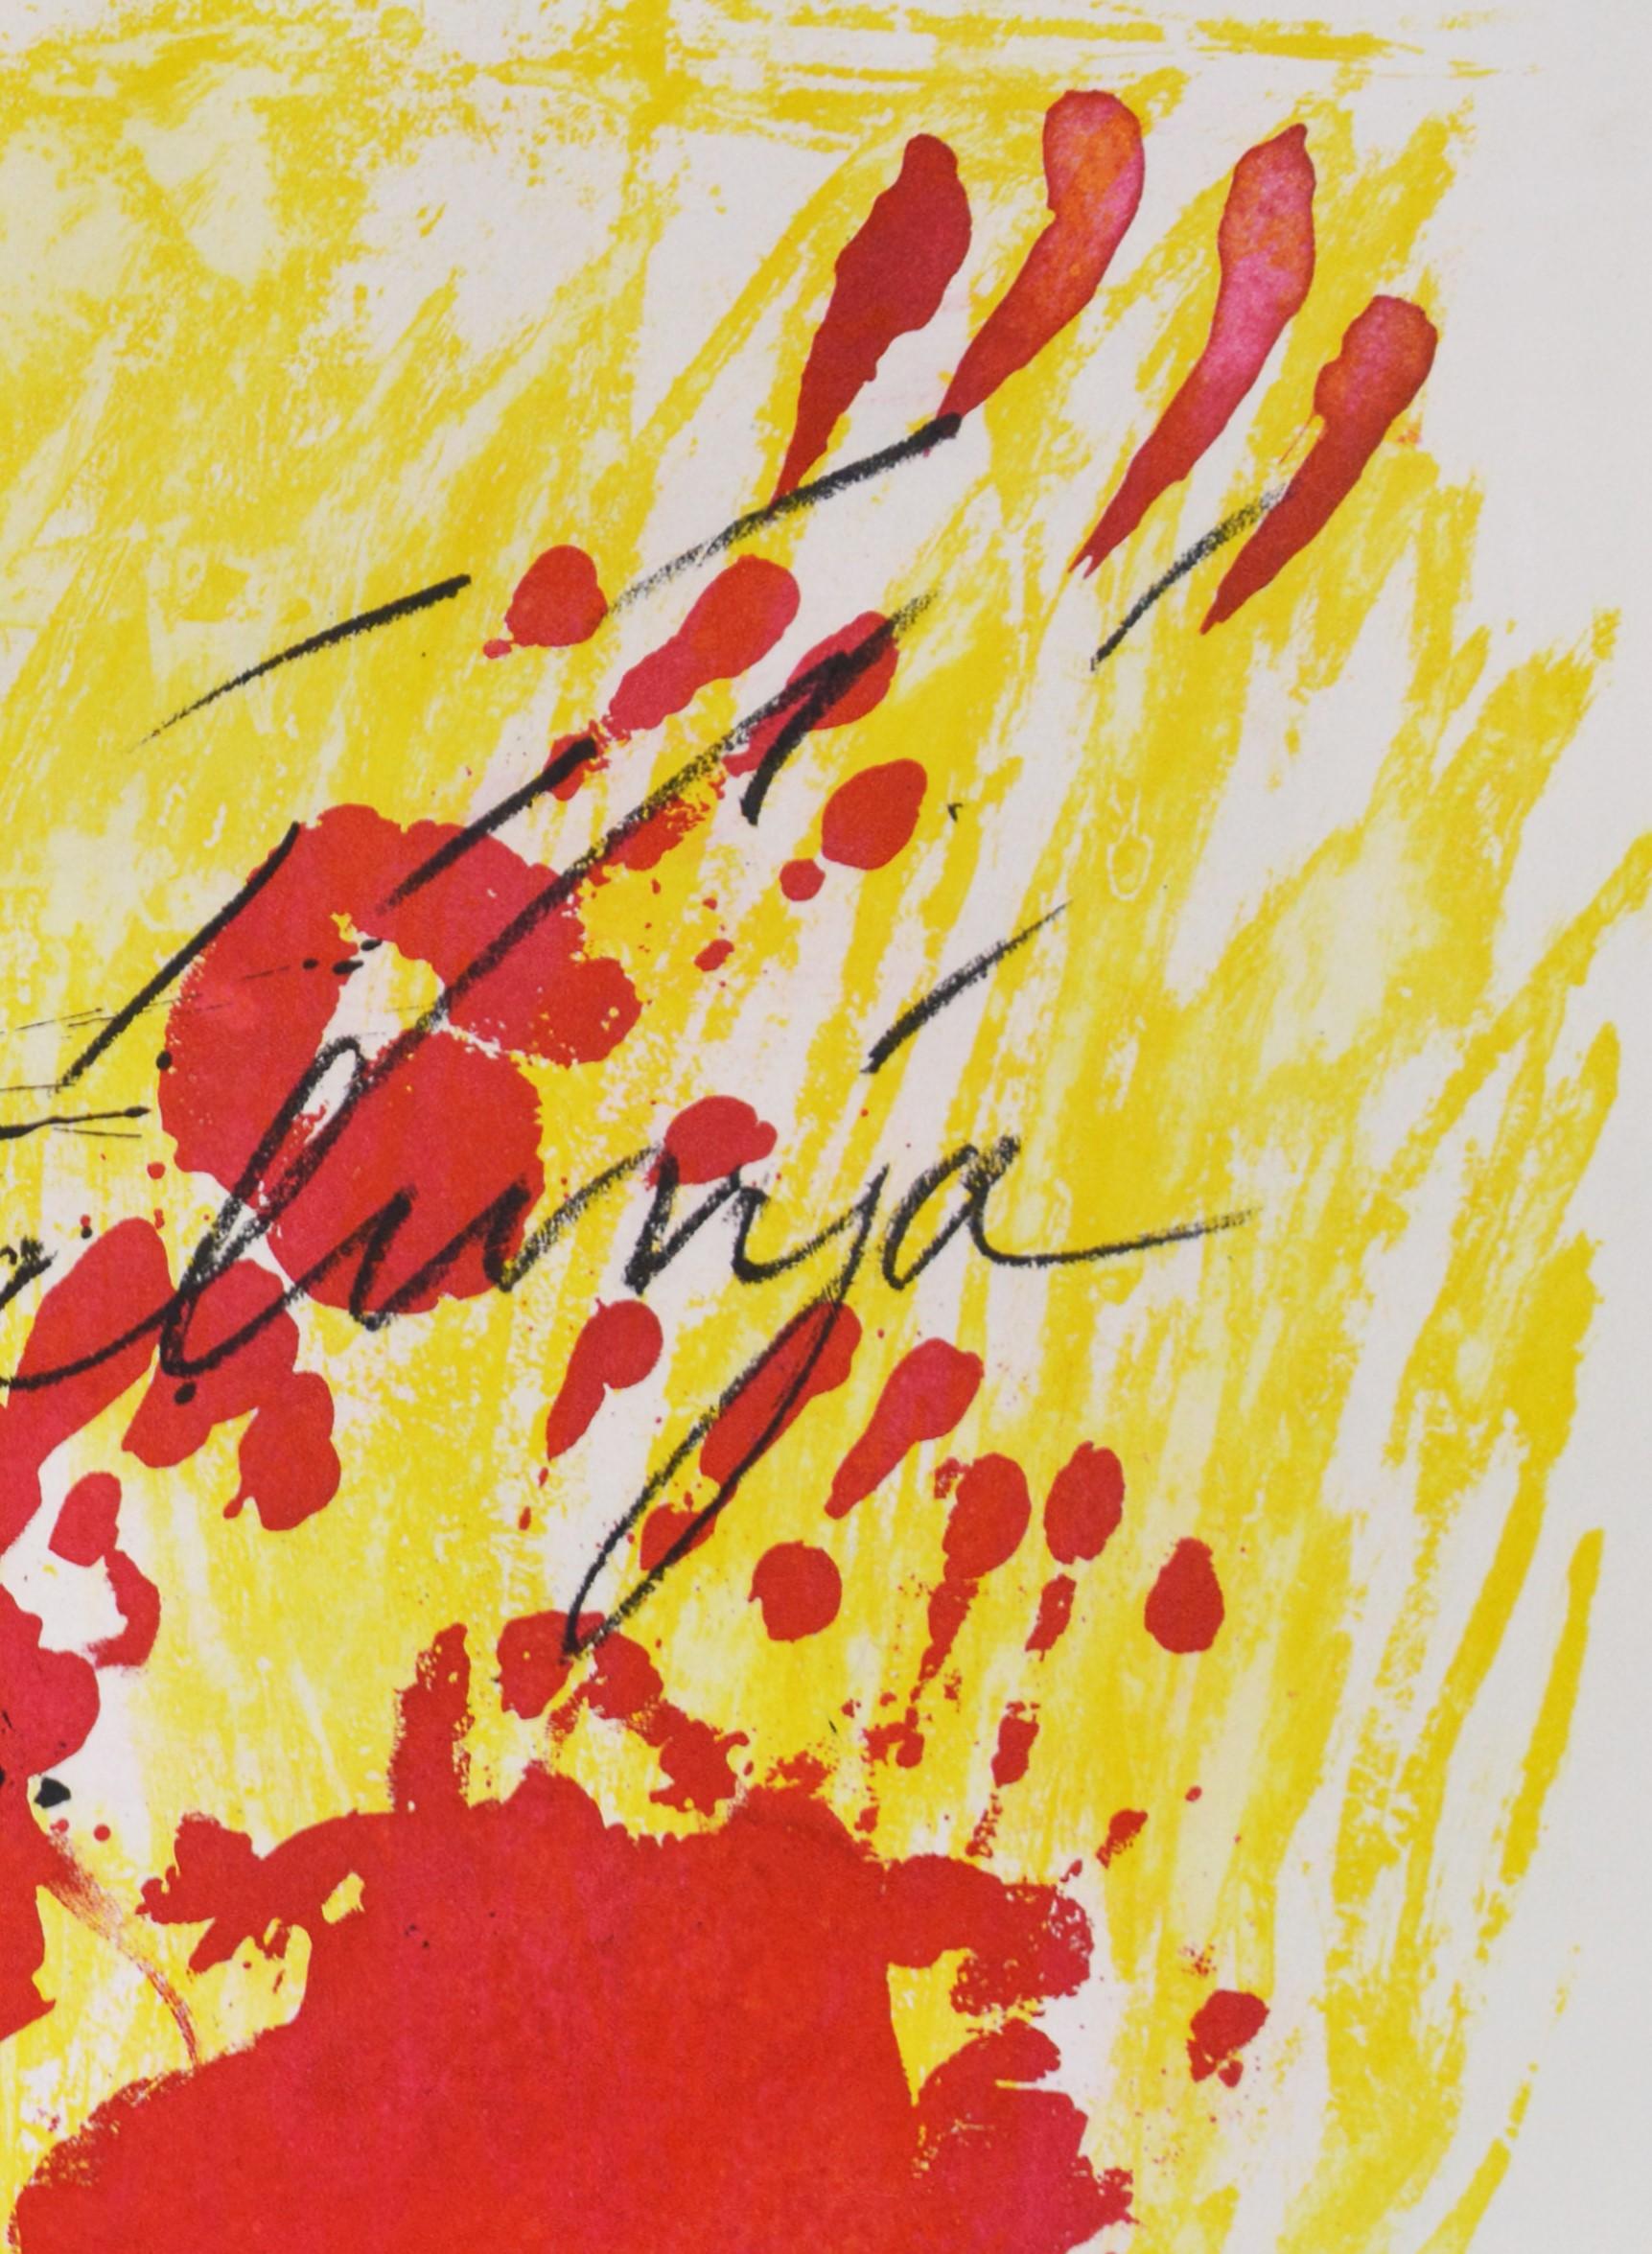 Aquatinta in Farben, 1972, auf Guarro-Papier mit Wasserzeichen La Cometa, signiert und mit Bleistift bezeichnet P.A. aus der Auflage von 75 Exemplaren, herausgegeben von Editorial Gustavo Gili, Barcelona.

Papier 75,7 x 100,5 cm. 

Galfetti 302-306